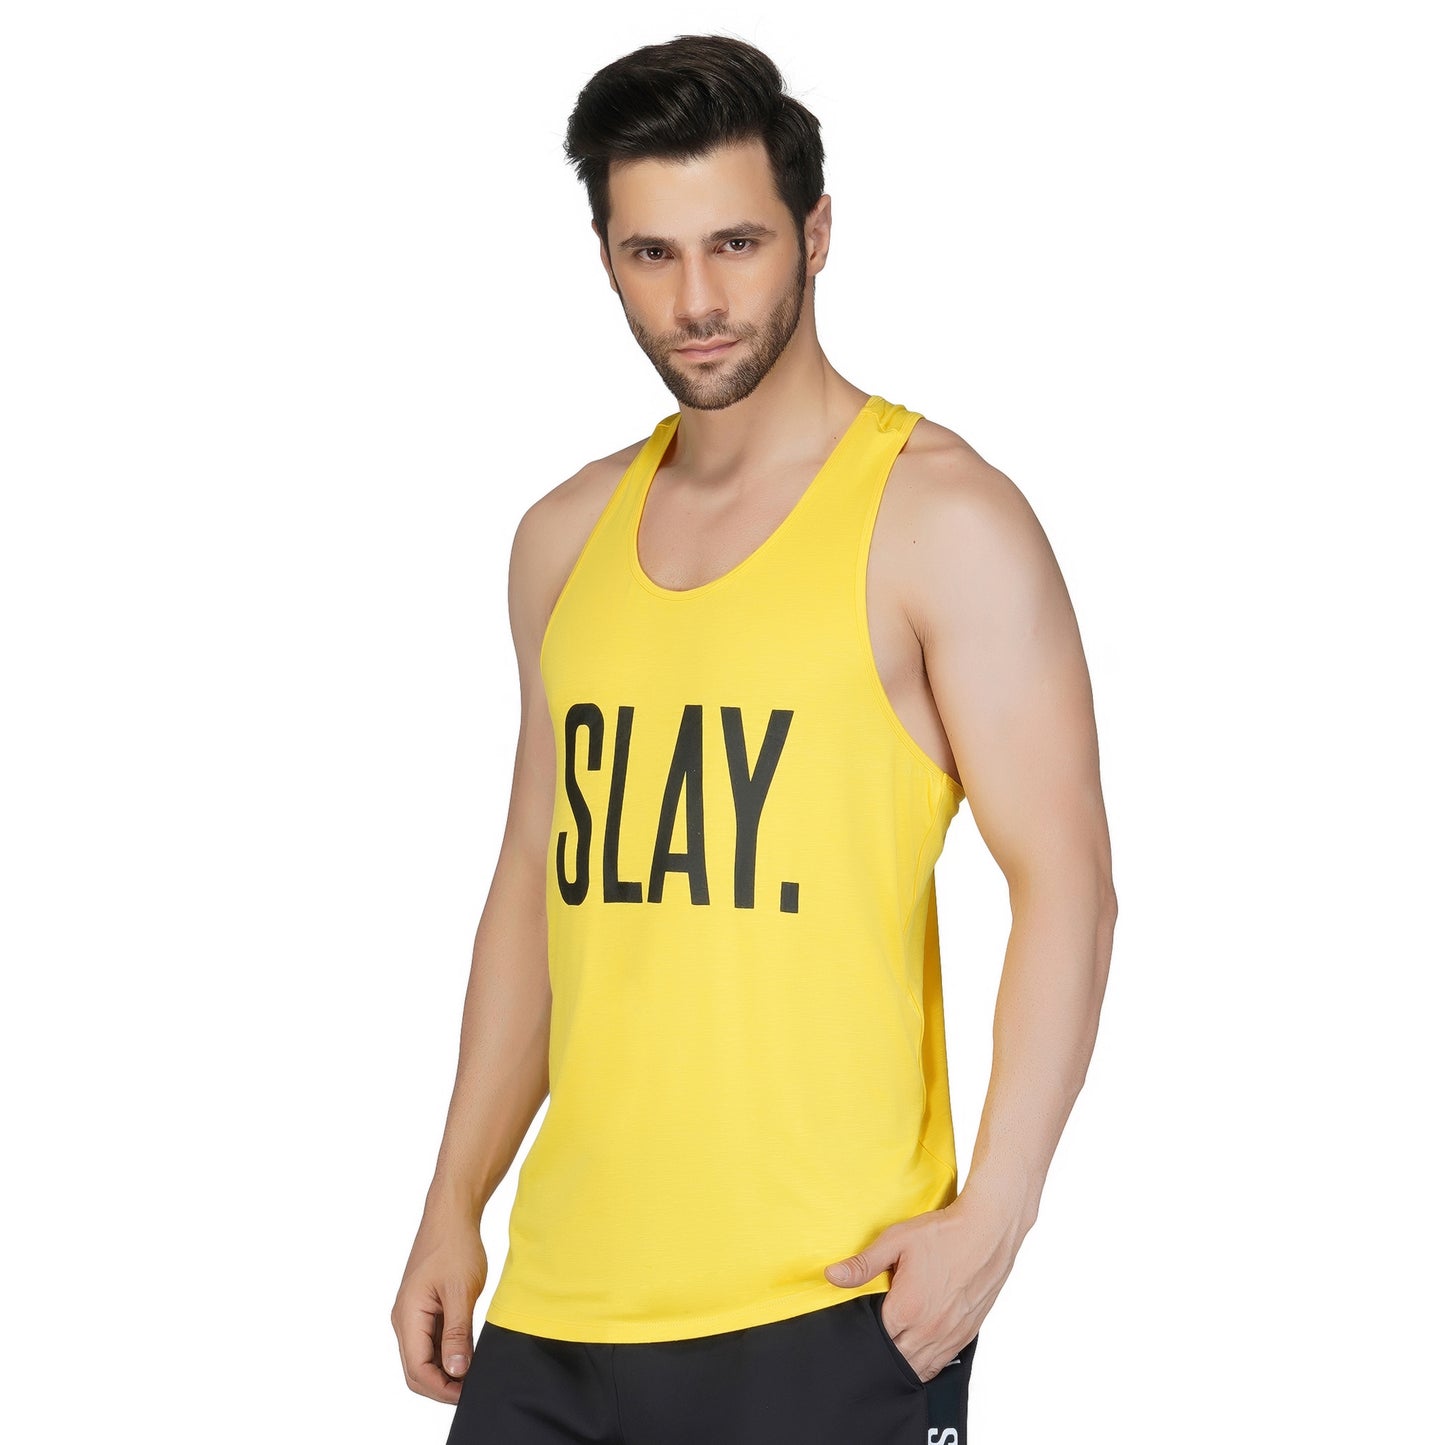 SLAY. Men's Yellow Gym Vest